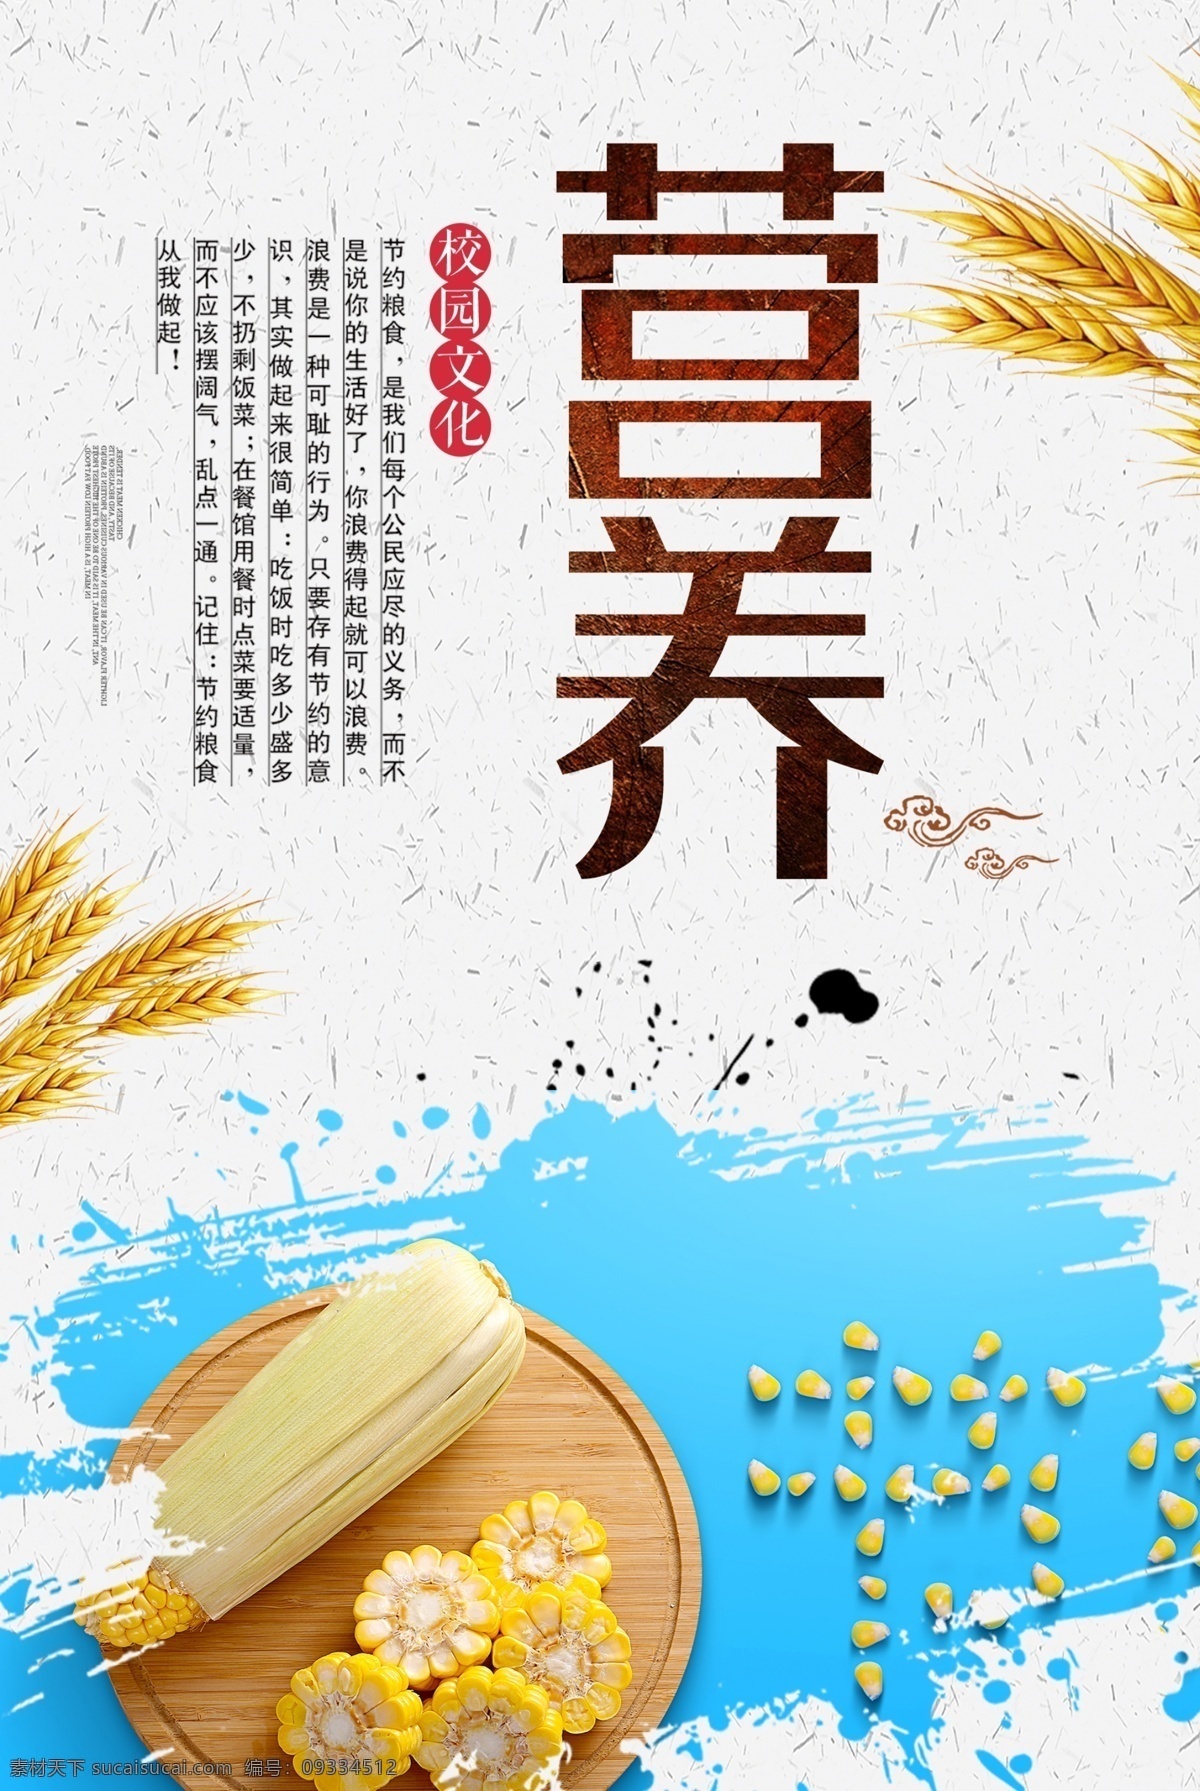 营养海报 饭堂海报 餐厅海报 玉米 背景图 稻谷 分层